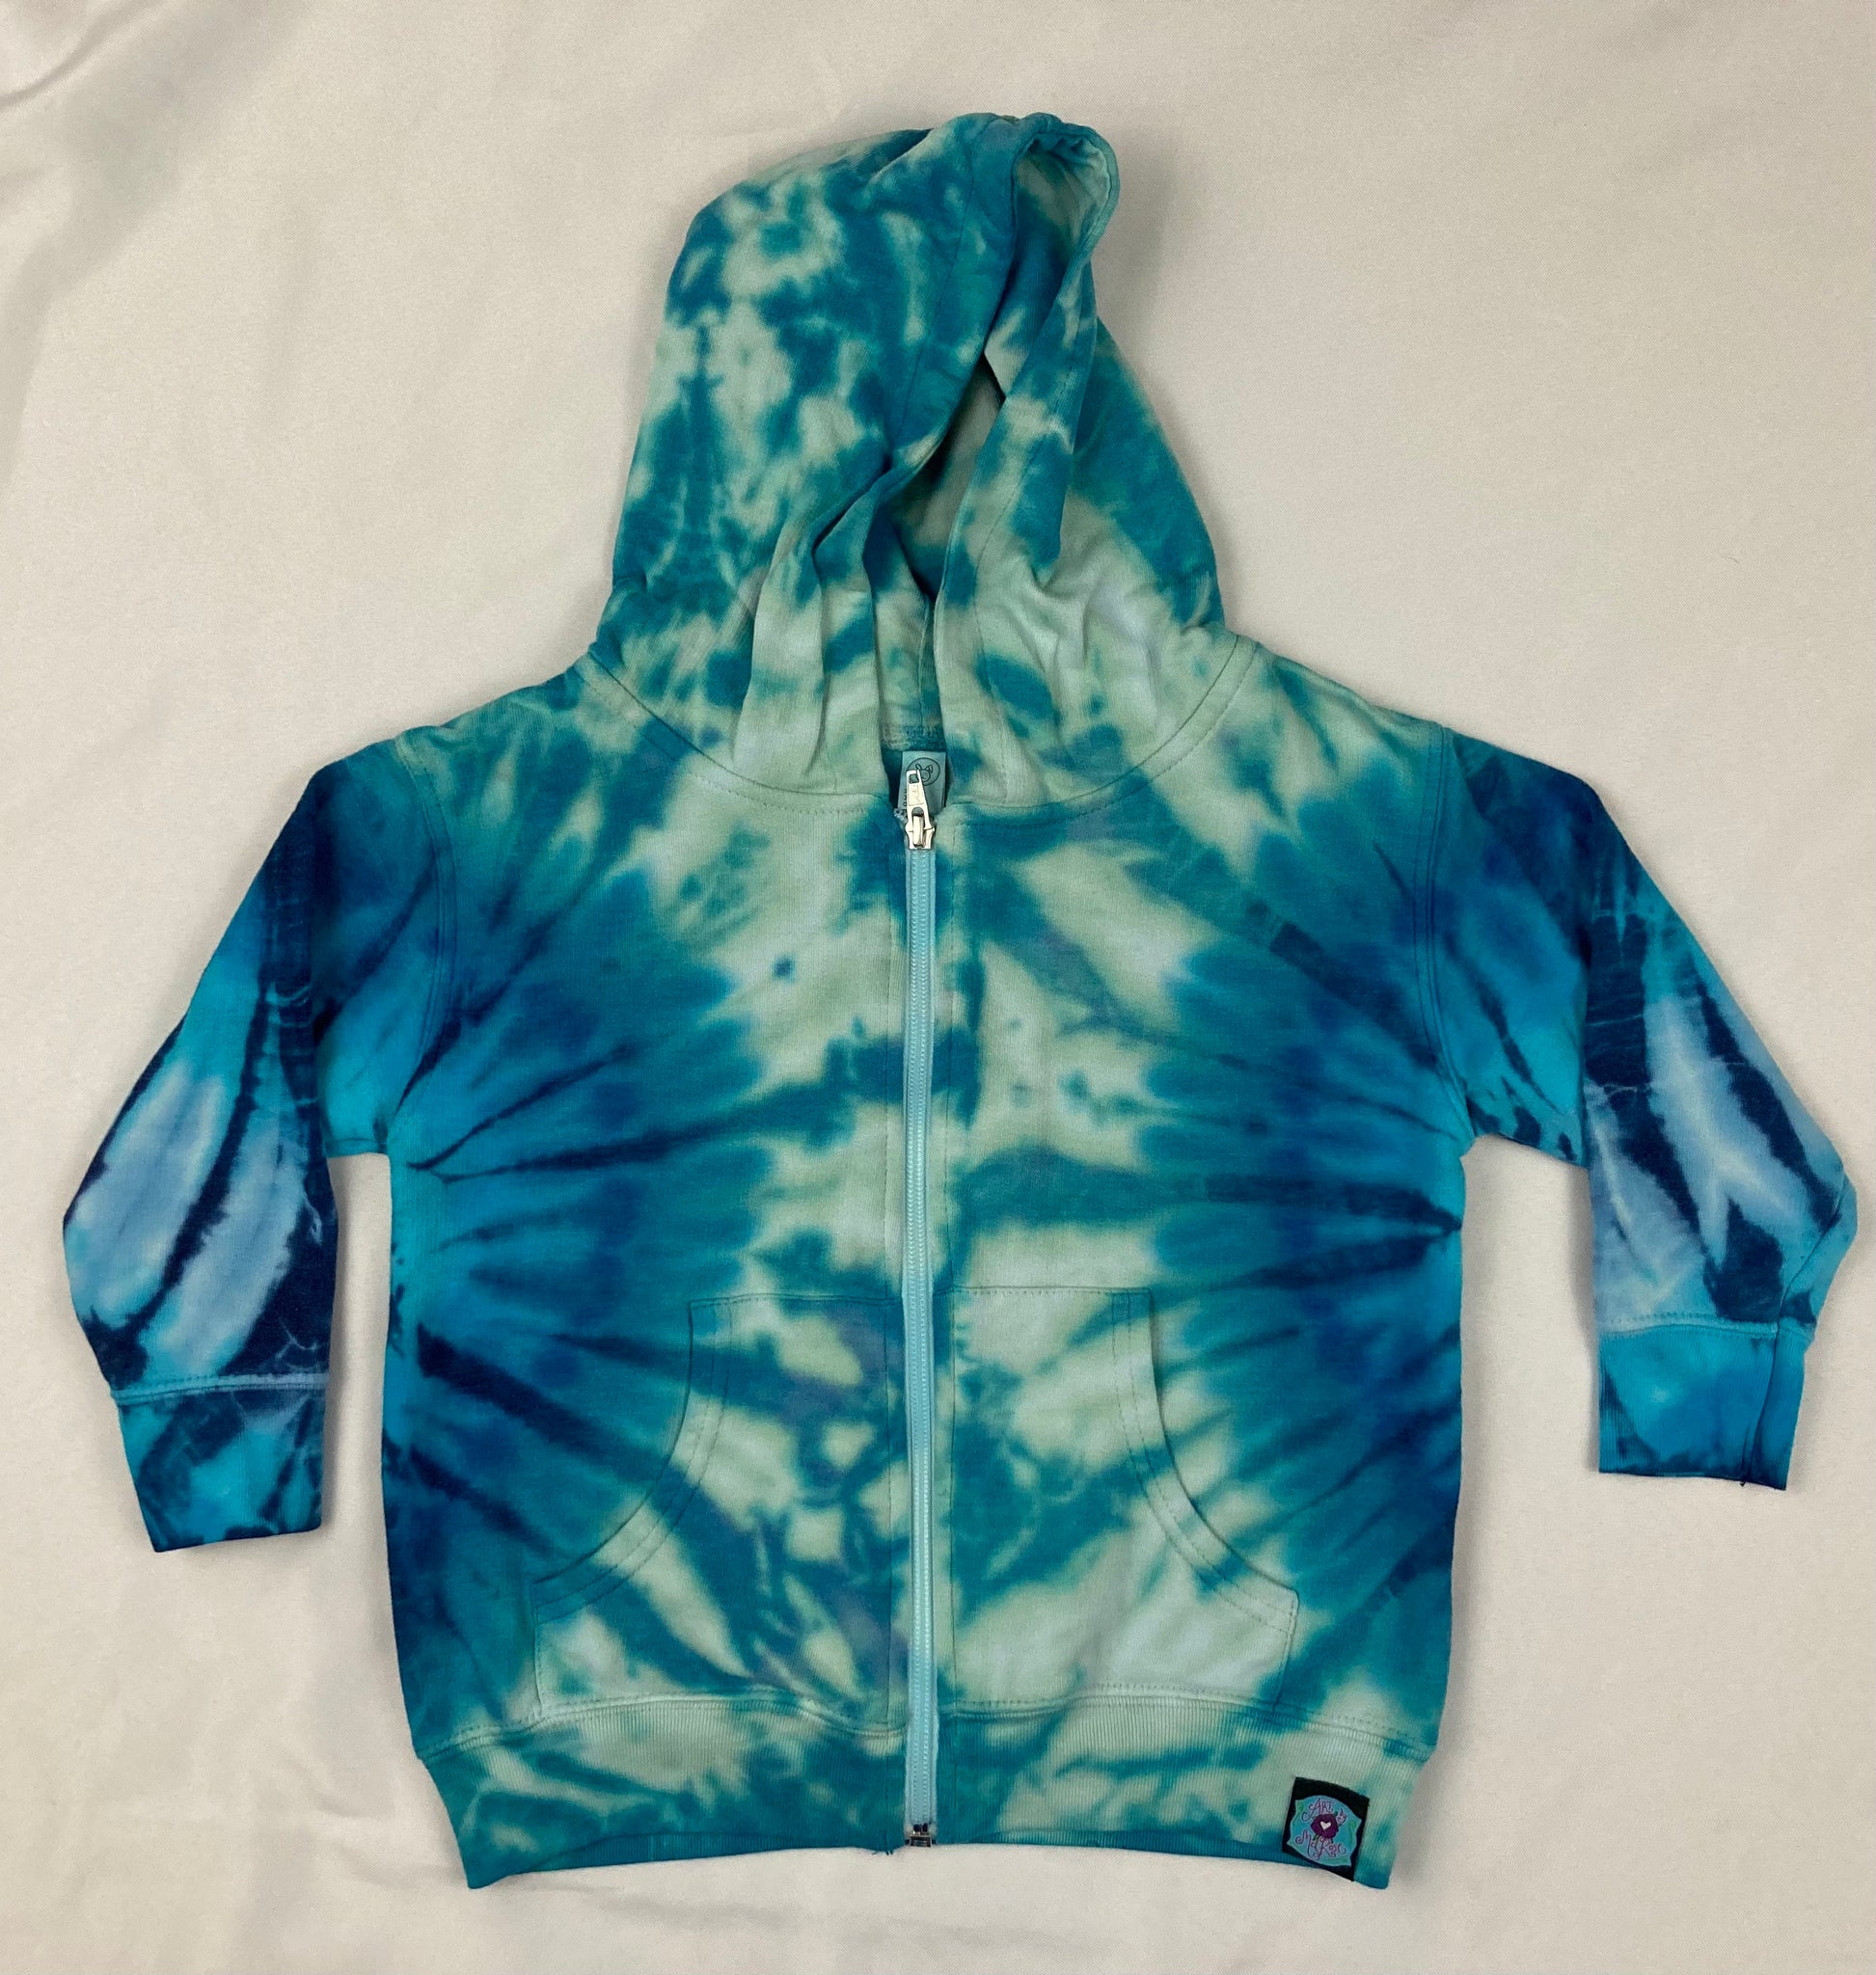 Youth Seafoam/Blue Tie-dyed Zip Hoodie, 4T